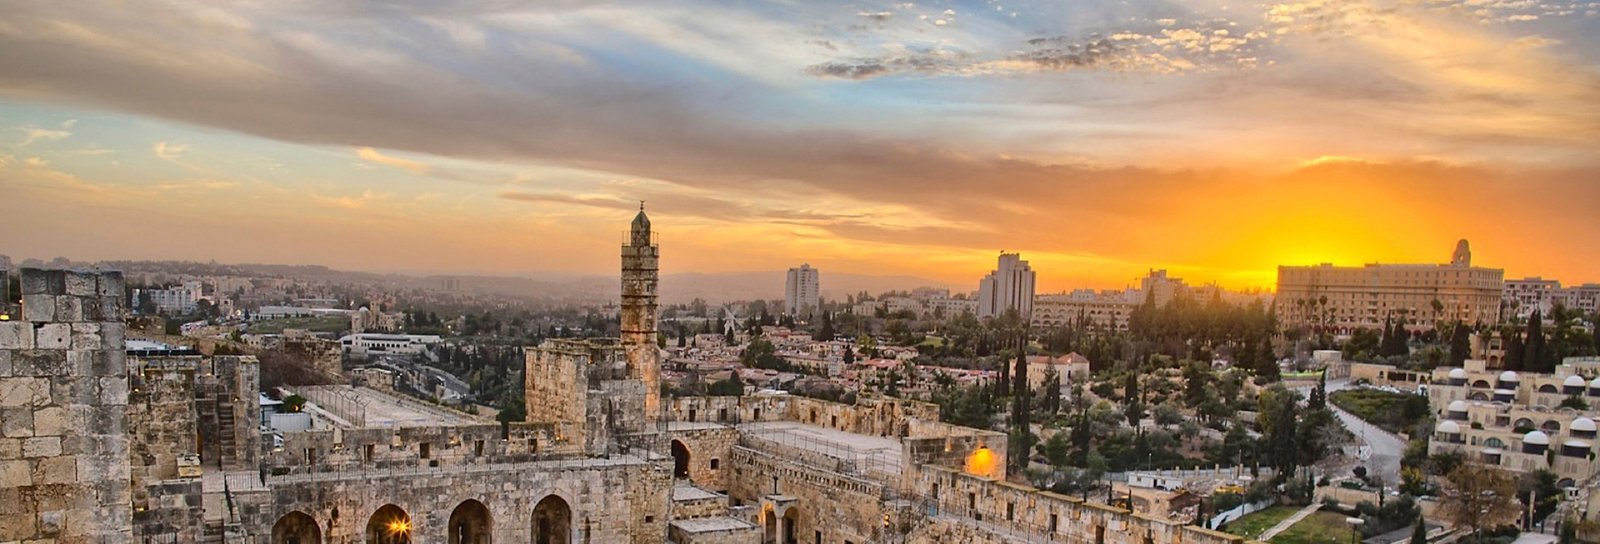 Lição 1 - Jerusalém e Galileia: as terras onde Jesus viveu II